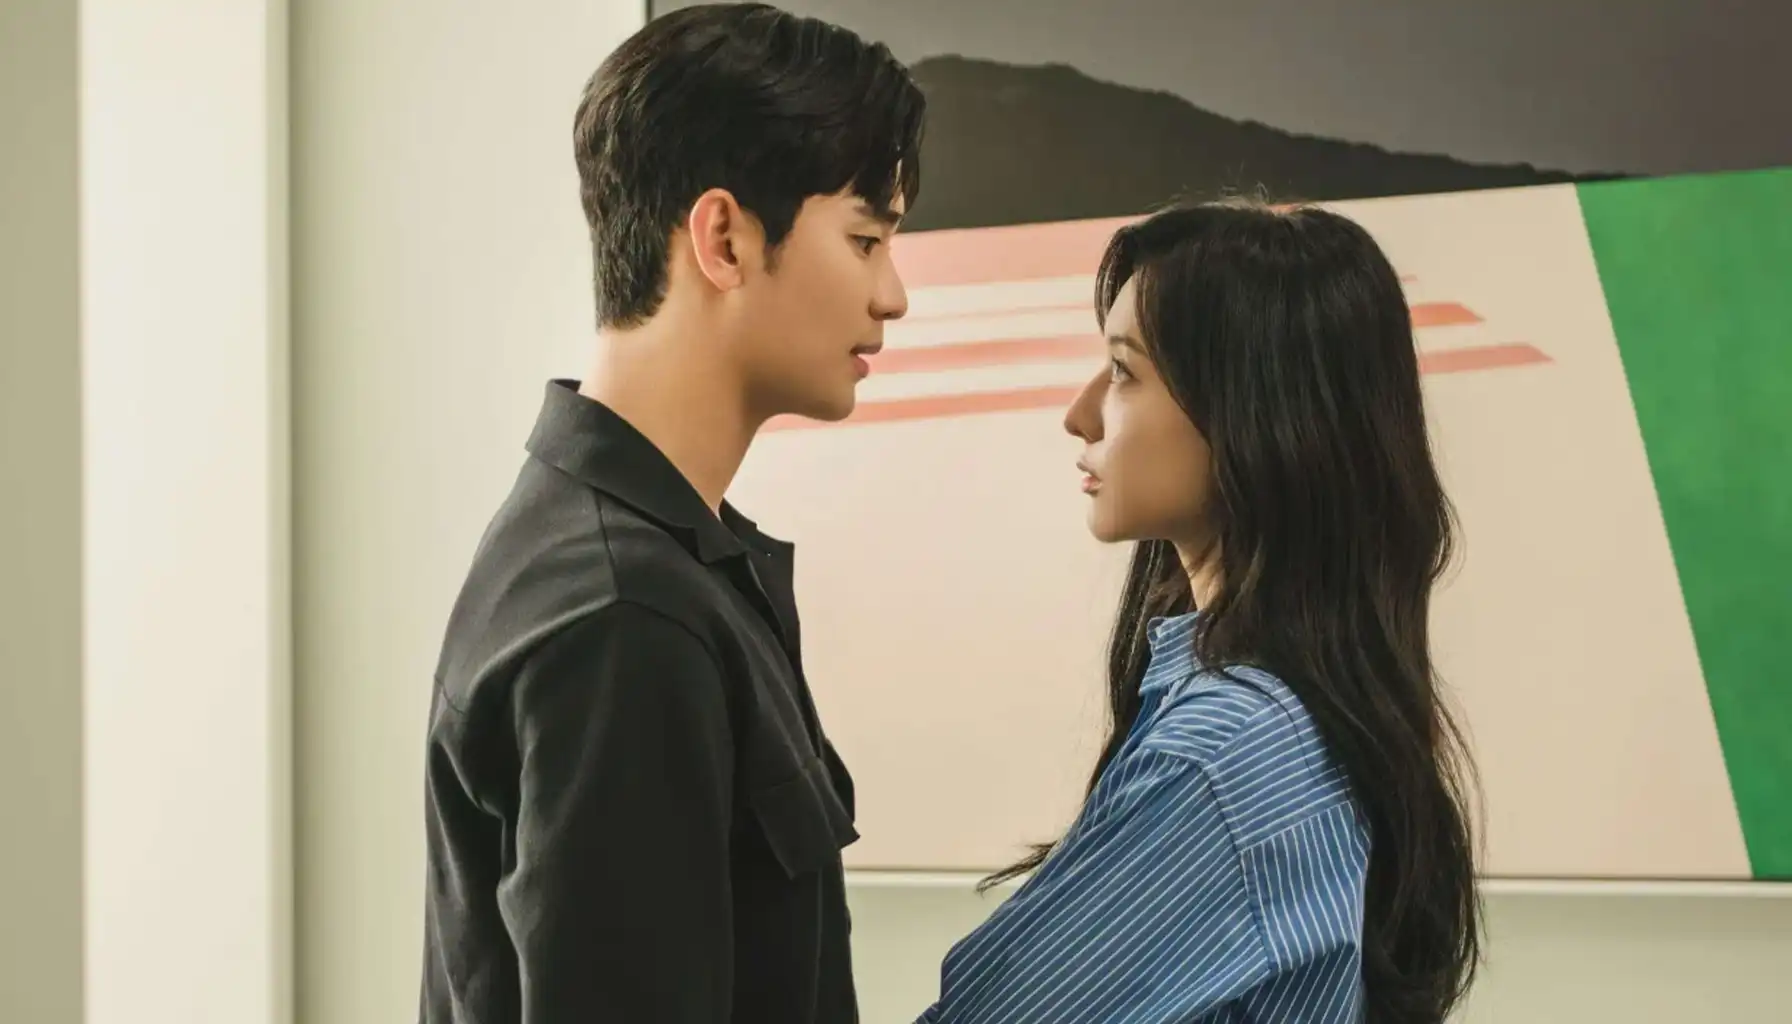 Drama Queen of Tears menyuguhkan romansa mendalam antara Hae In dan Hyun Woo yang ditunggu penggemar, pantau beritanya.